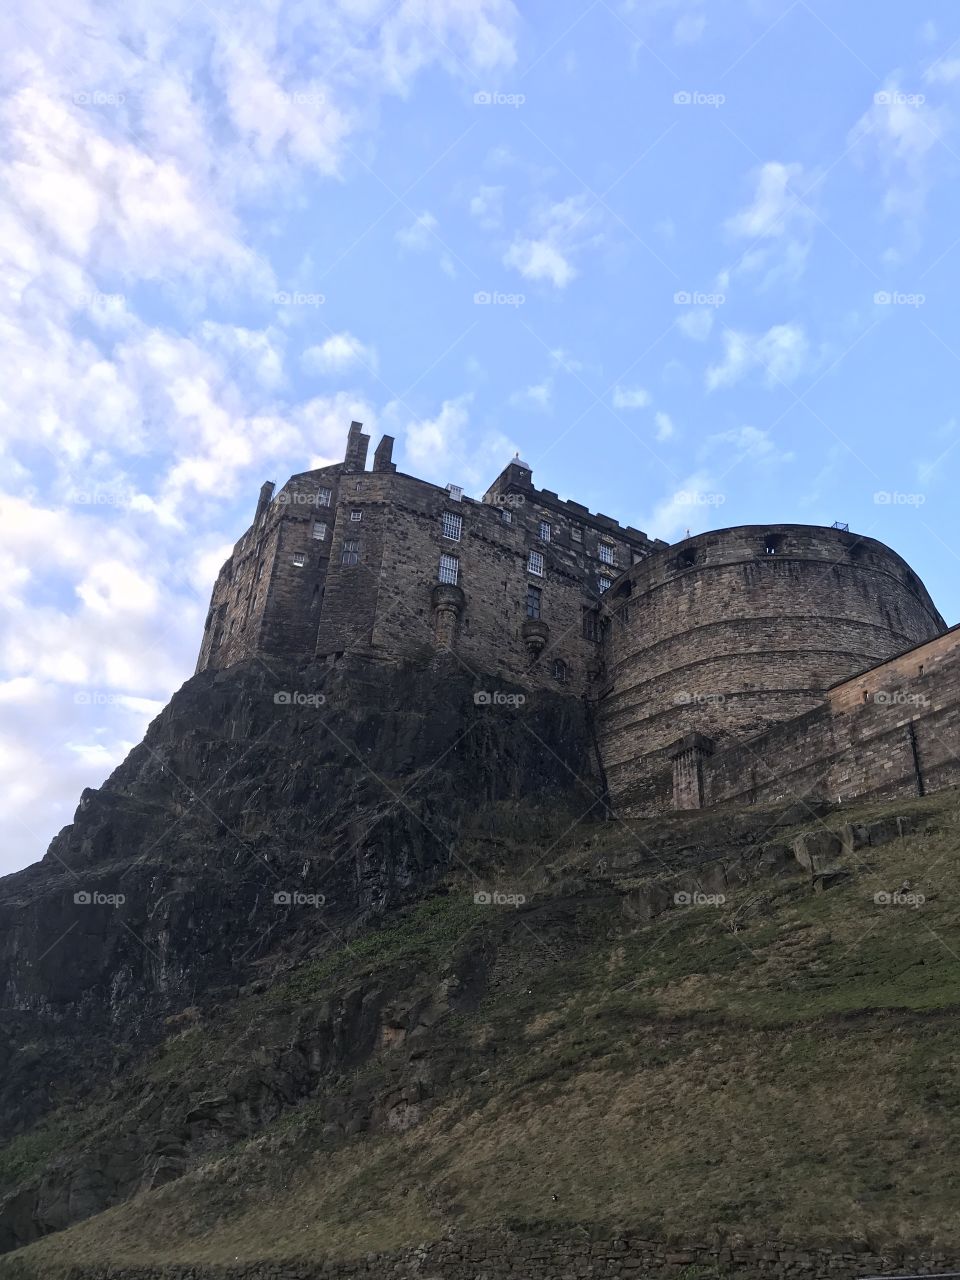 The castle in Scotland 